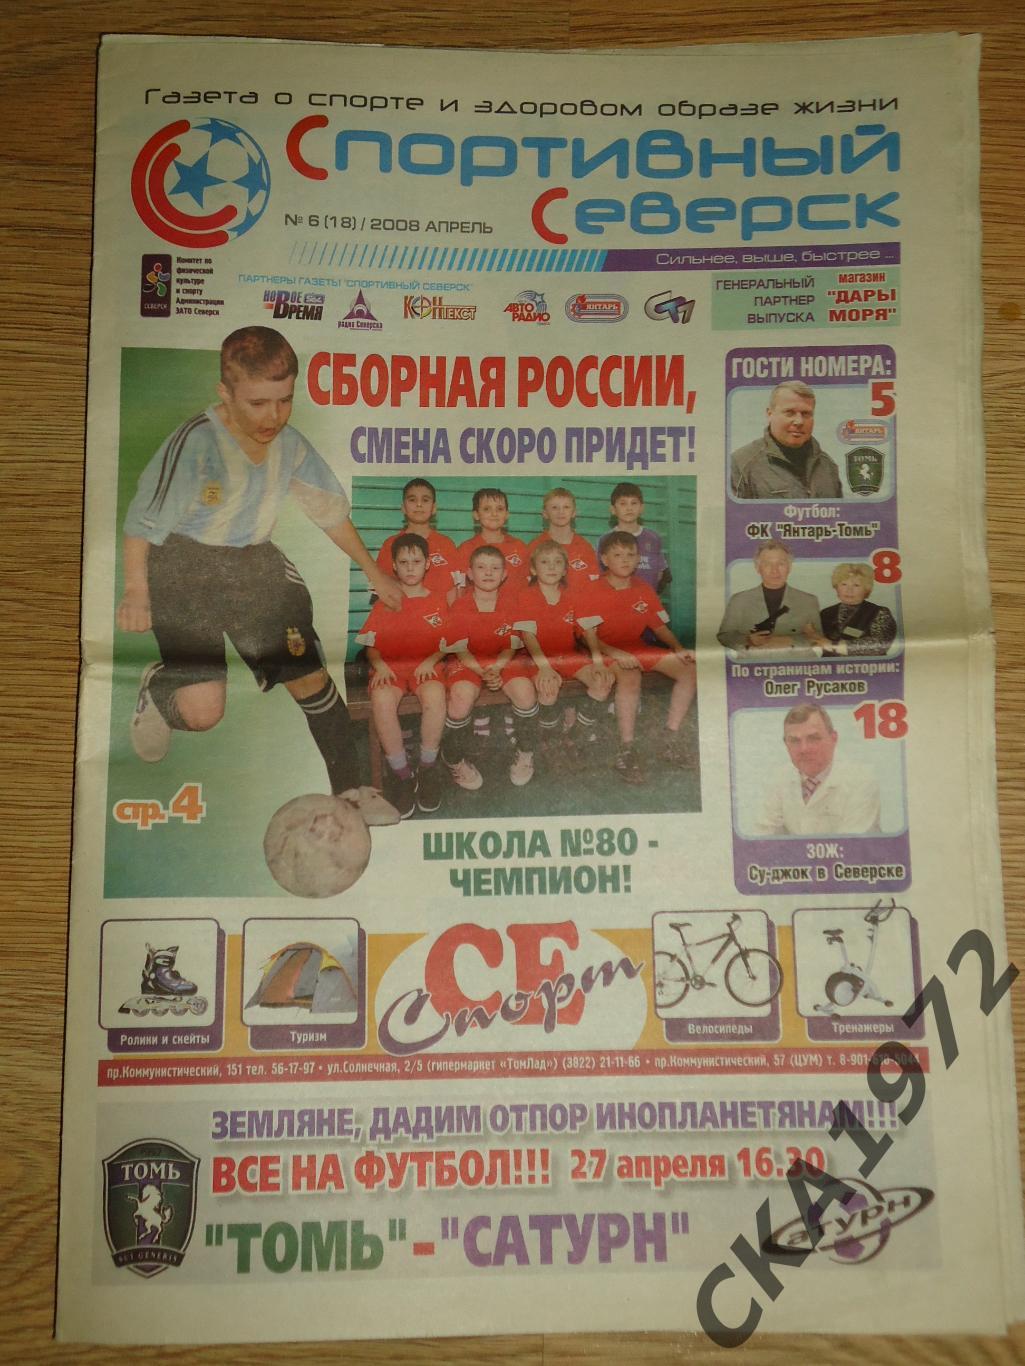 газета Спортивный Северск №6 2008 апрель +++